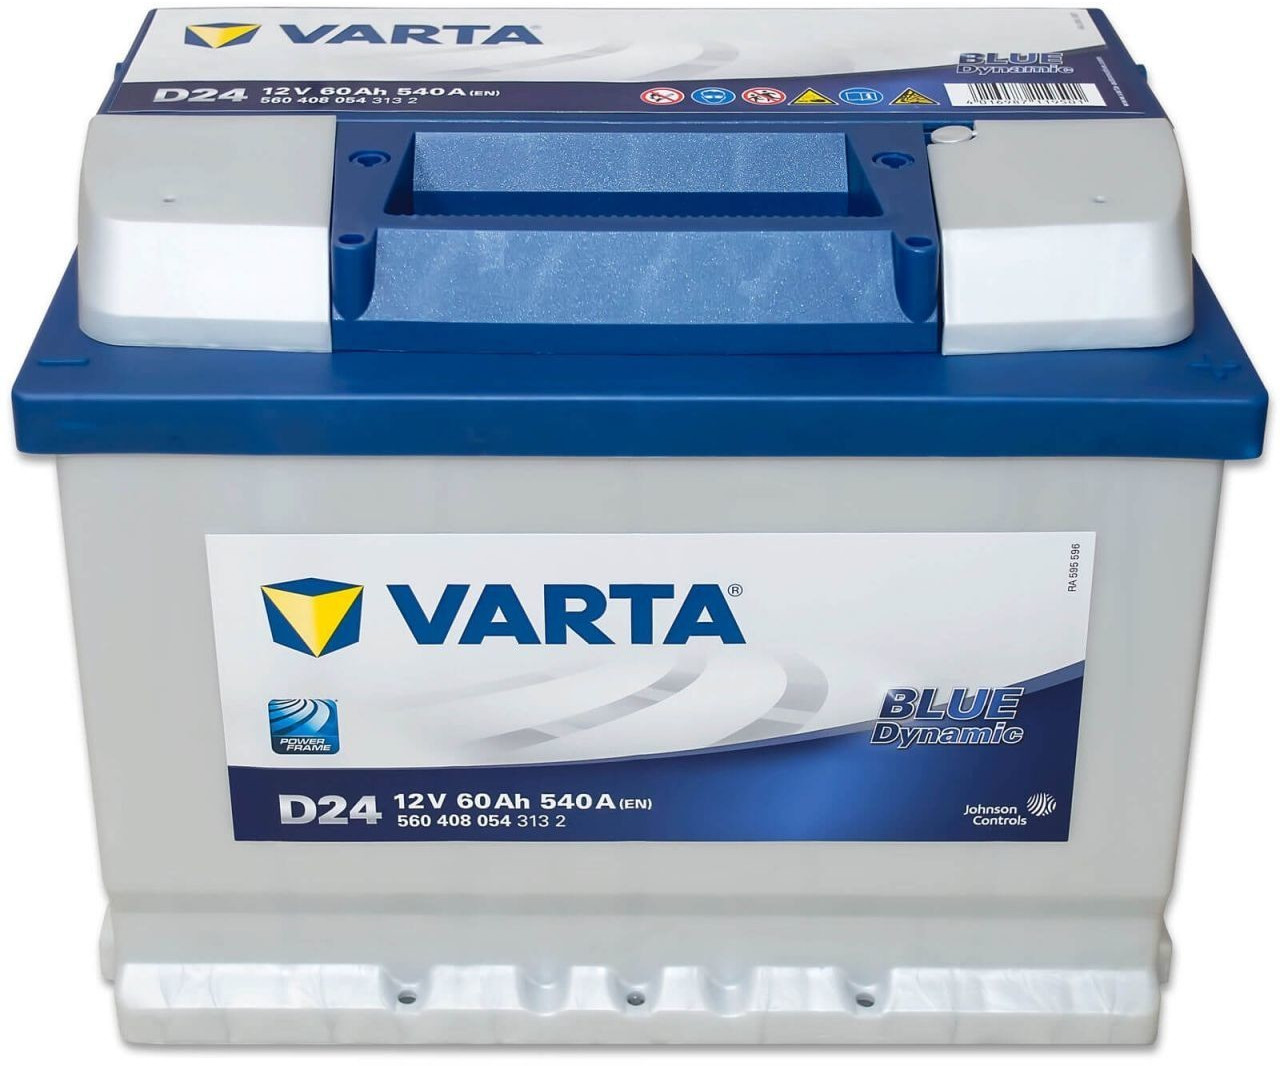 VARTA Blue Dynamic 12V 60Ah D24 ab € 78,00